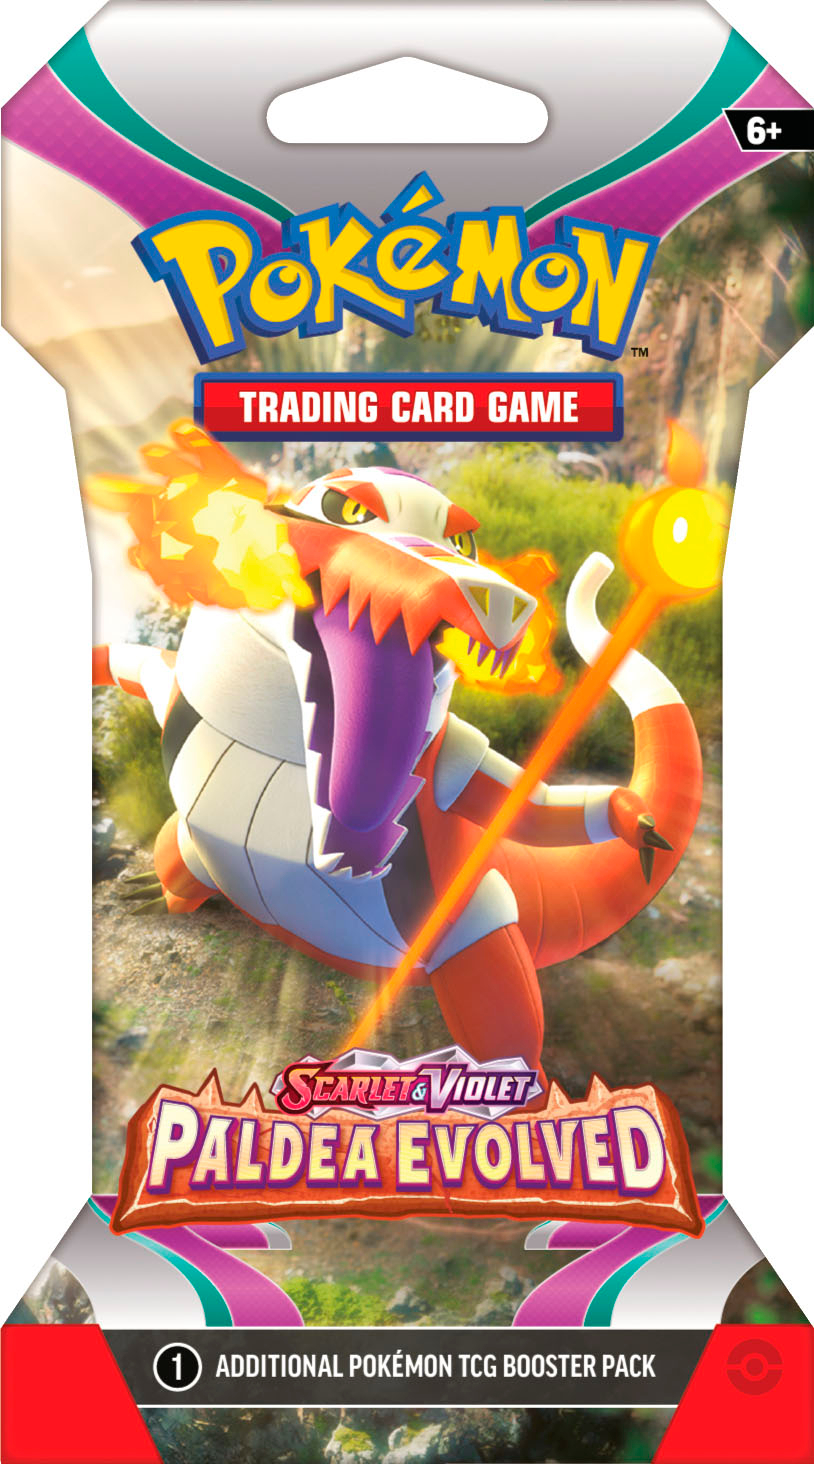 Pokémon TCG: Scarlet & Violet Sleeved Booster Pack (10 Cards